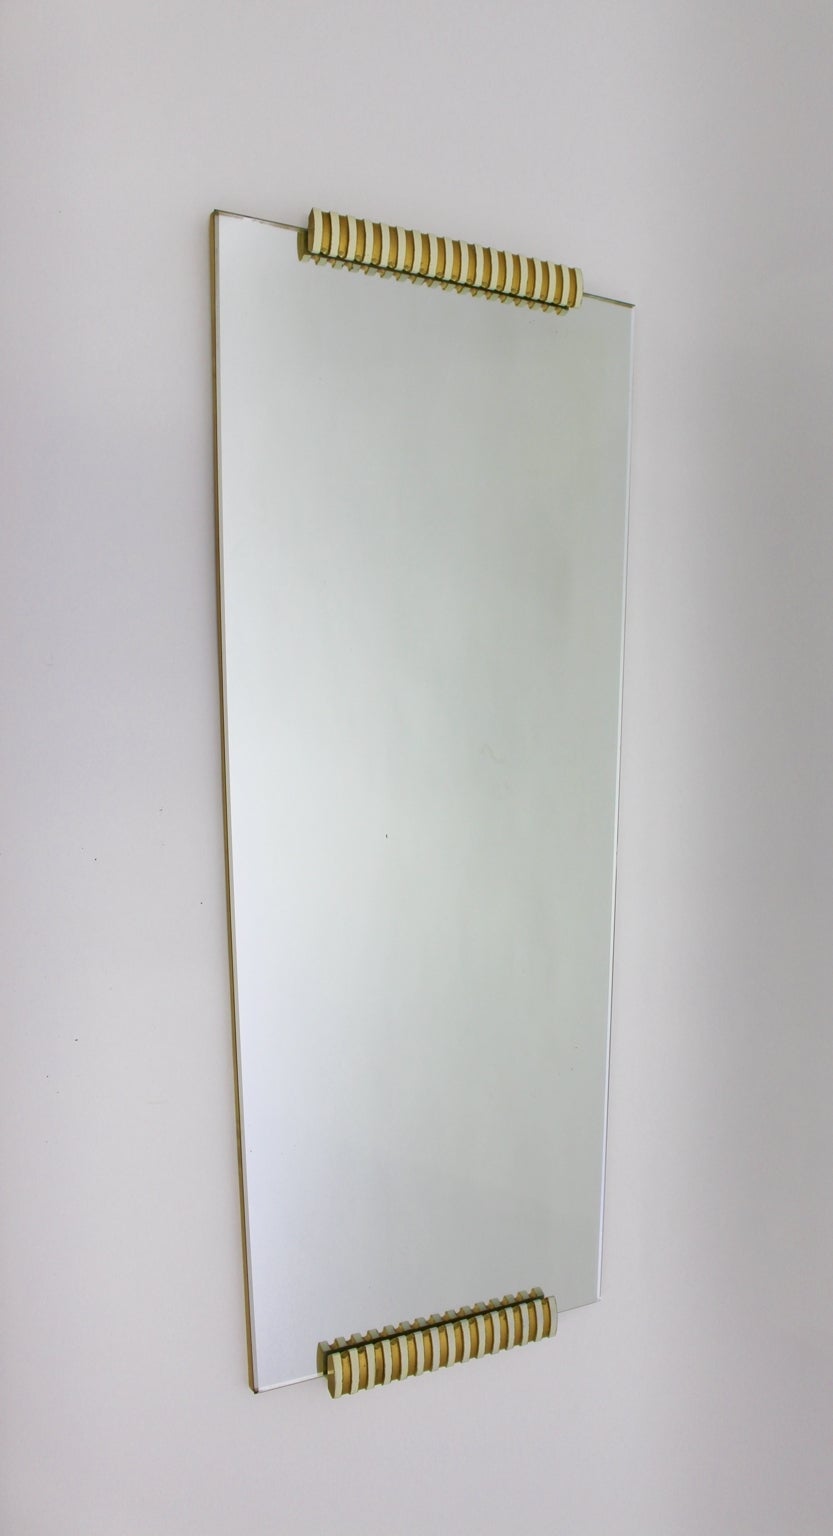 Mid-Century Modern ganzer Länge oder Wandspiegel sehr ähnlich zu Osvaldo Borsani Stil aus Fichte und Ahorn Furnier und Spiegelglas.
Der Glasspiegel weist eine schöne Spiegelpatina auf. Die volle Länge oder Wandspiegel verfügt über zwei geschnitzte